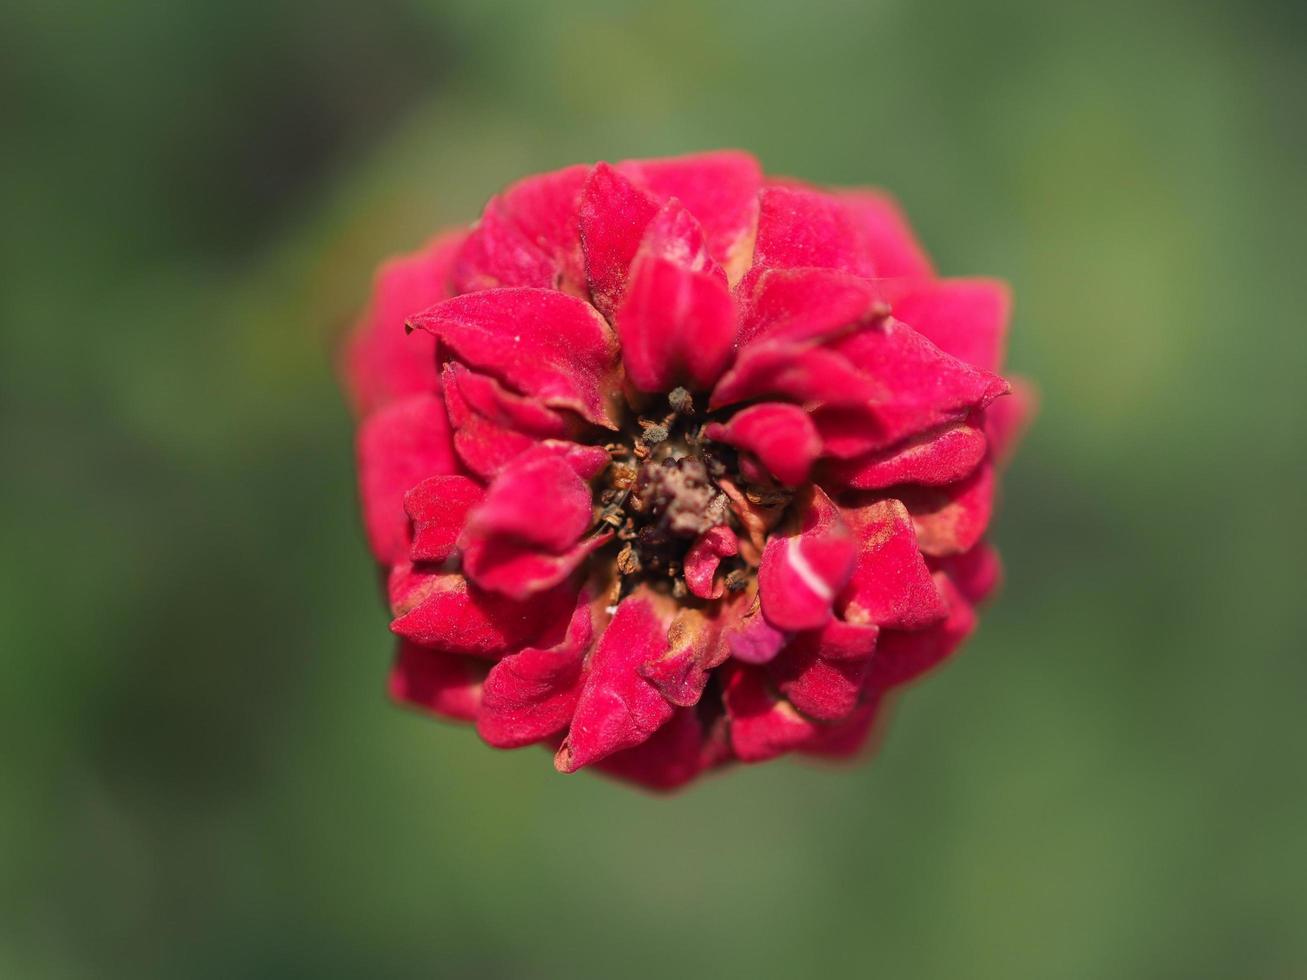 bloem is rode roos en roze roos foto